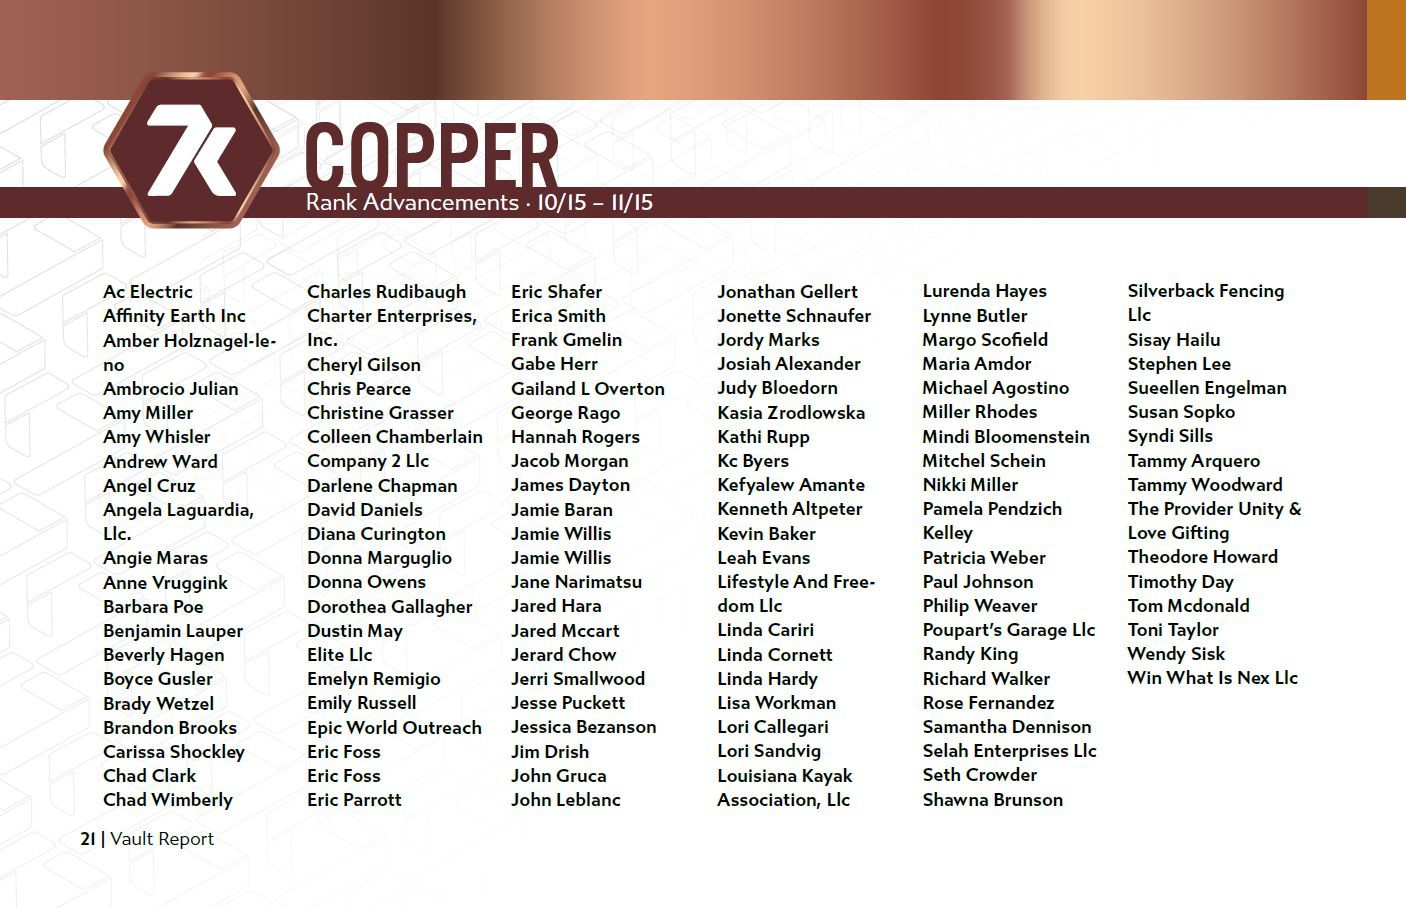 copper rankups 10/15 - 11/15